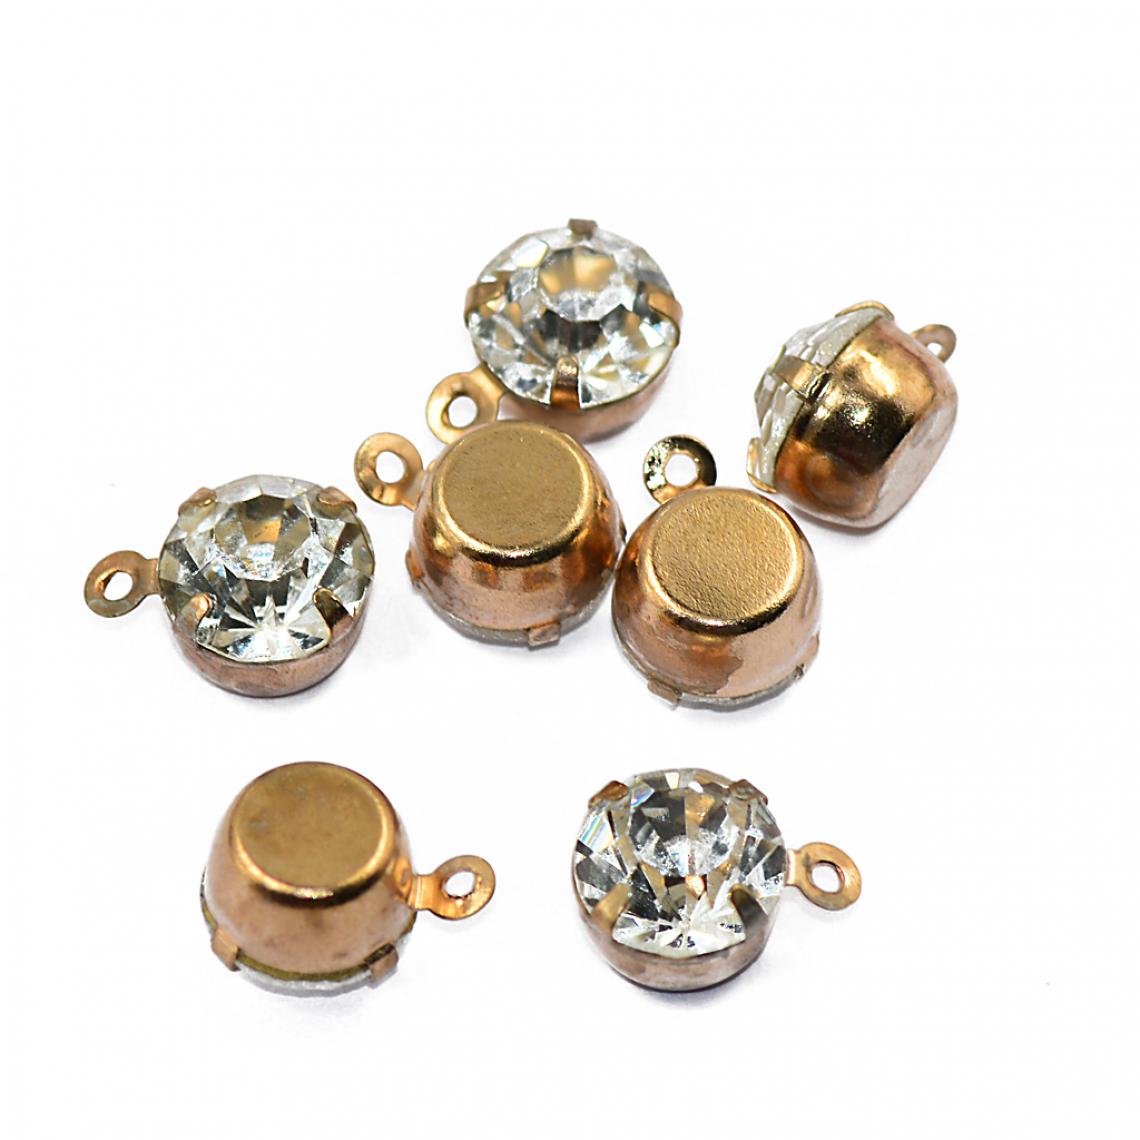 marque generique - 10pcs Pendentifs en Strass pour Fabrication de Bijoux DIY Artisanat - d'Or - Perles